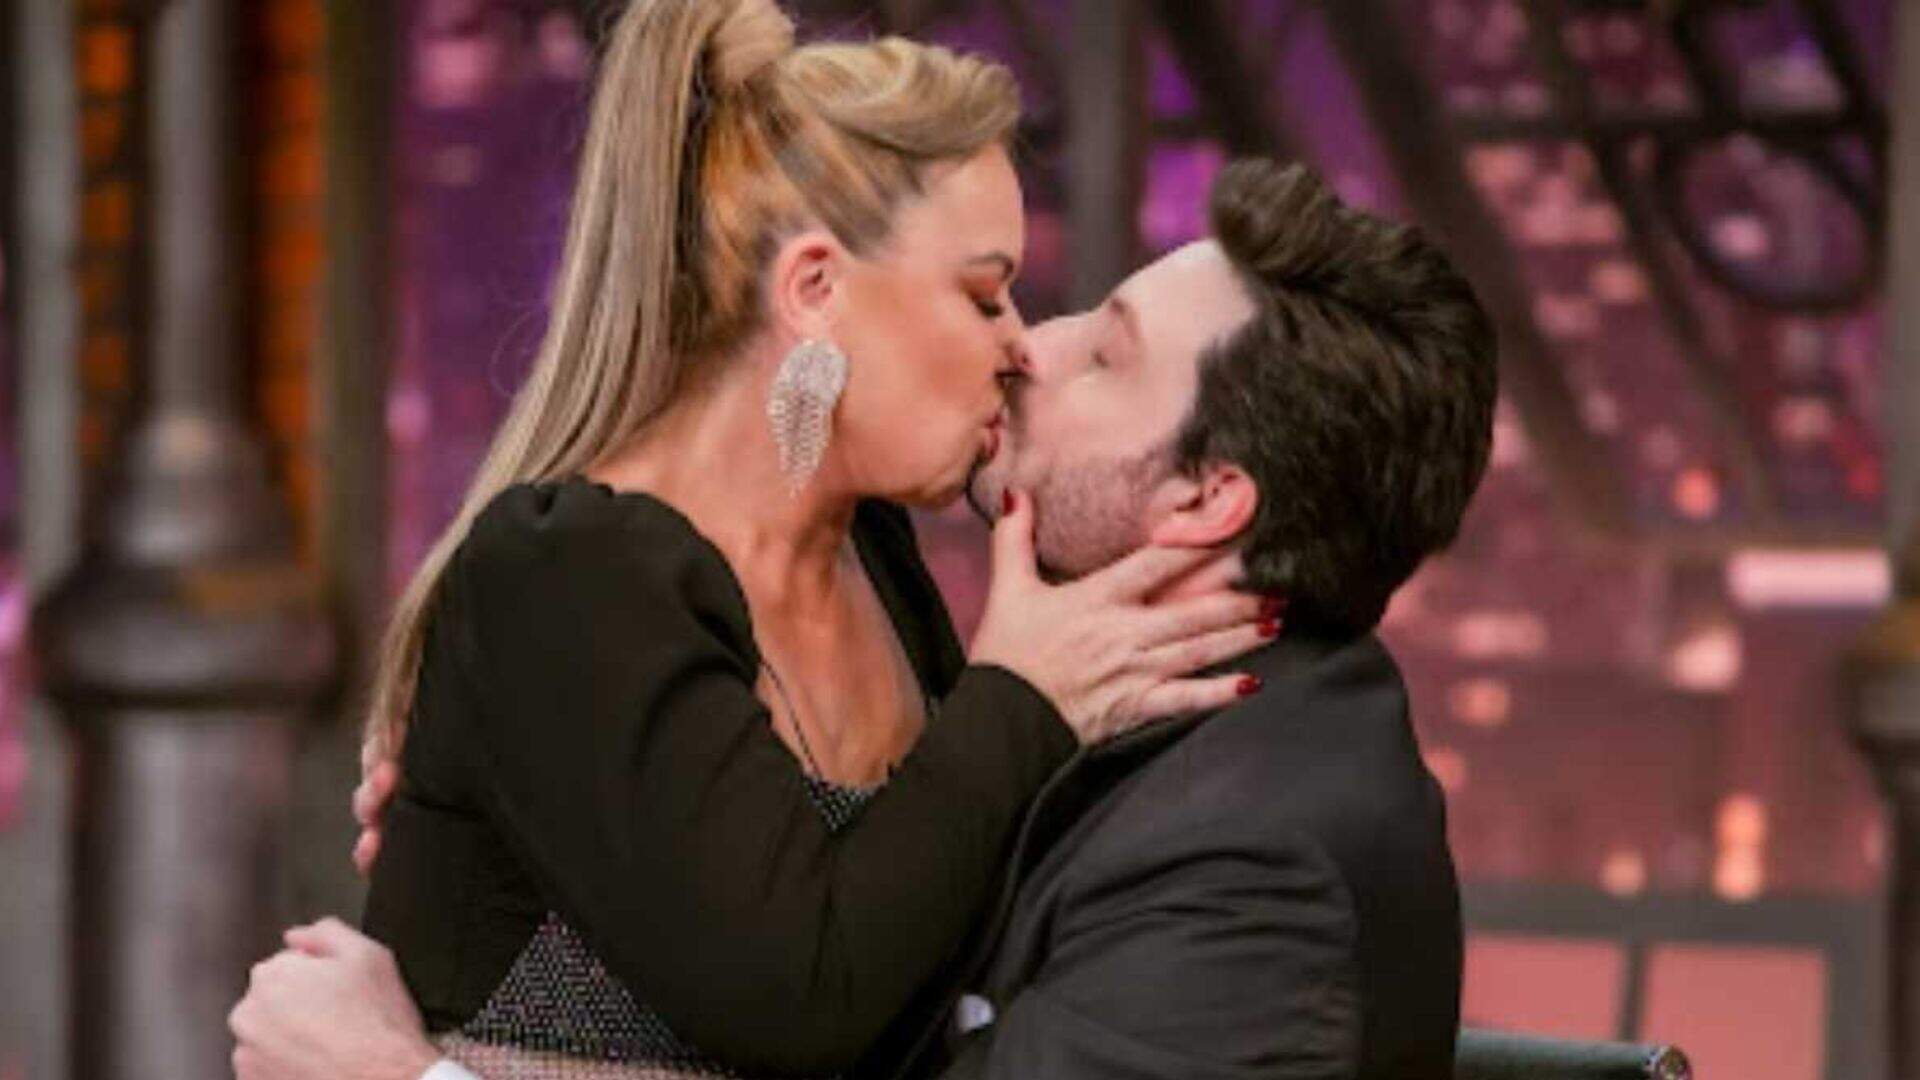 No “The Noite”, Danilo Gentili dá beijão em convidada e pega público de surpresa: “É assim!” - Metropolitana FM